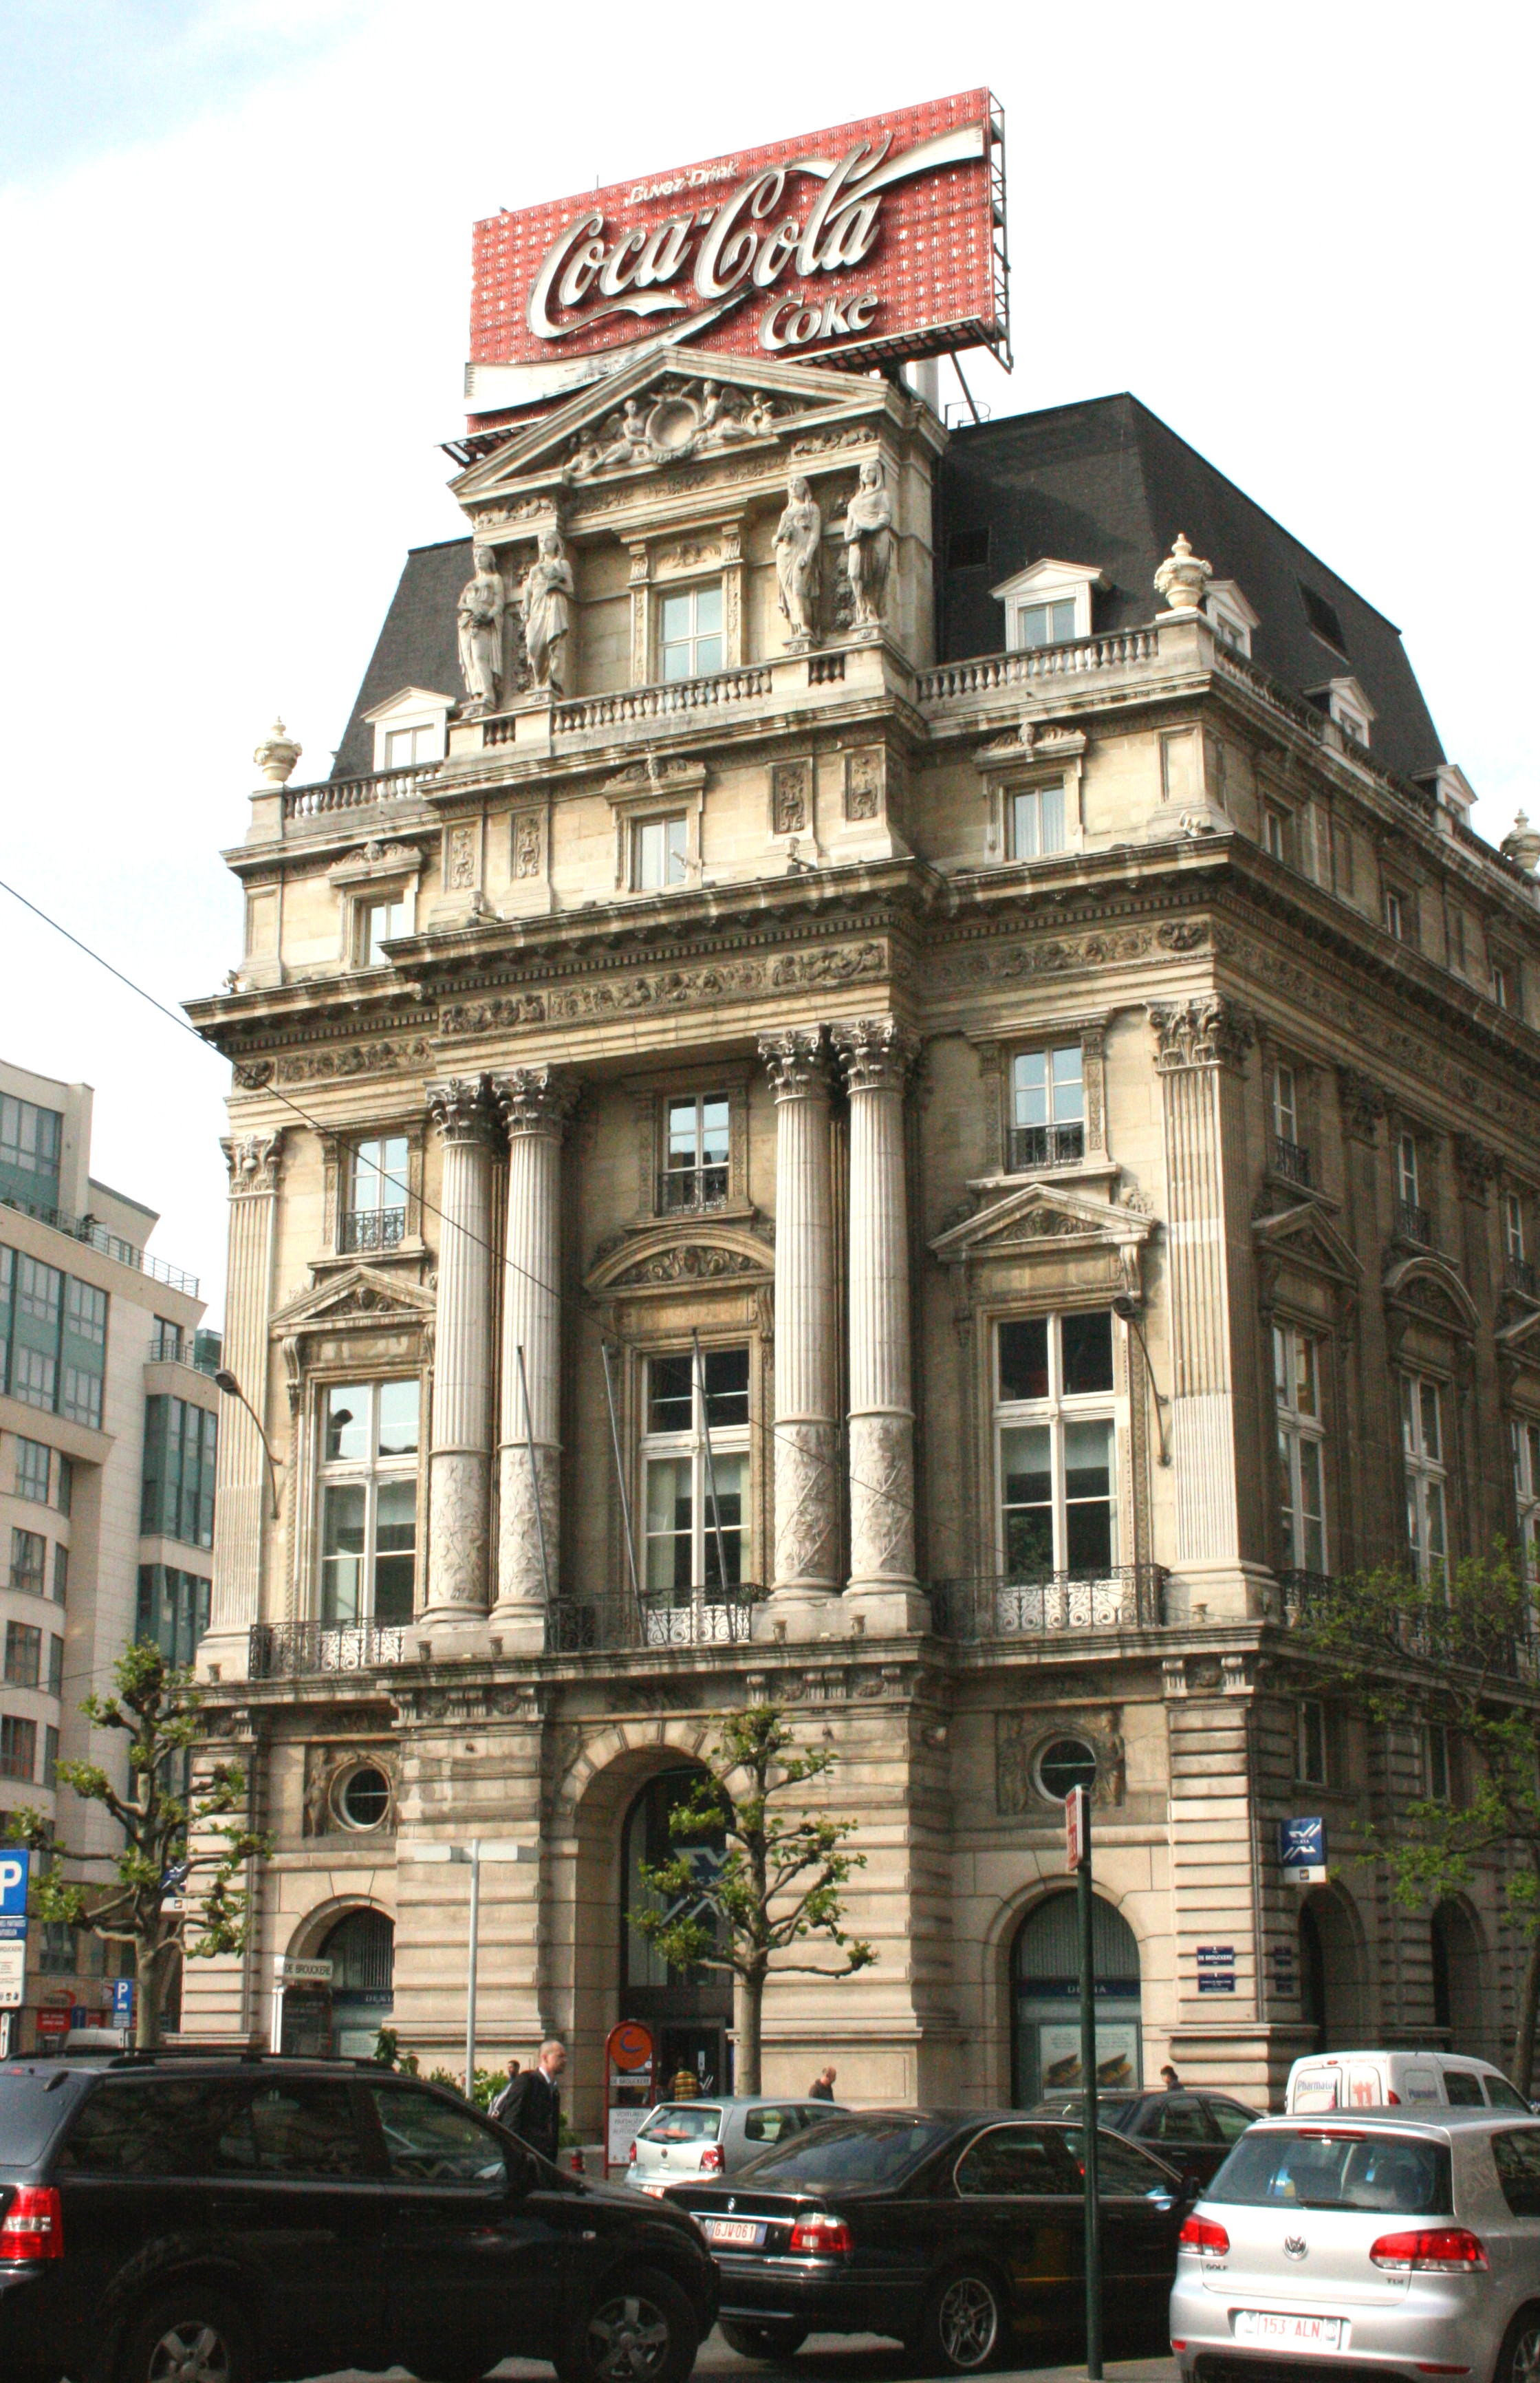 Hôtel Continental: le PTB soumet une offre pour reconvertir le bâtiment public en Maison du Peuple